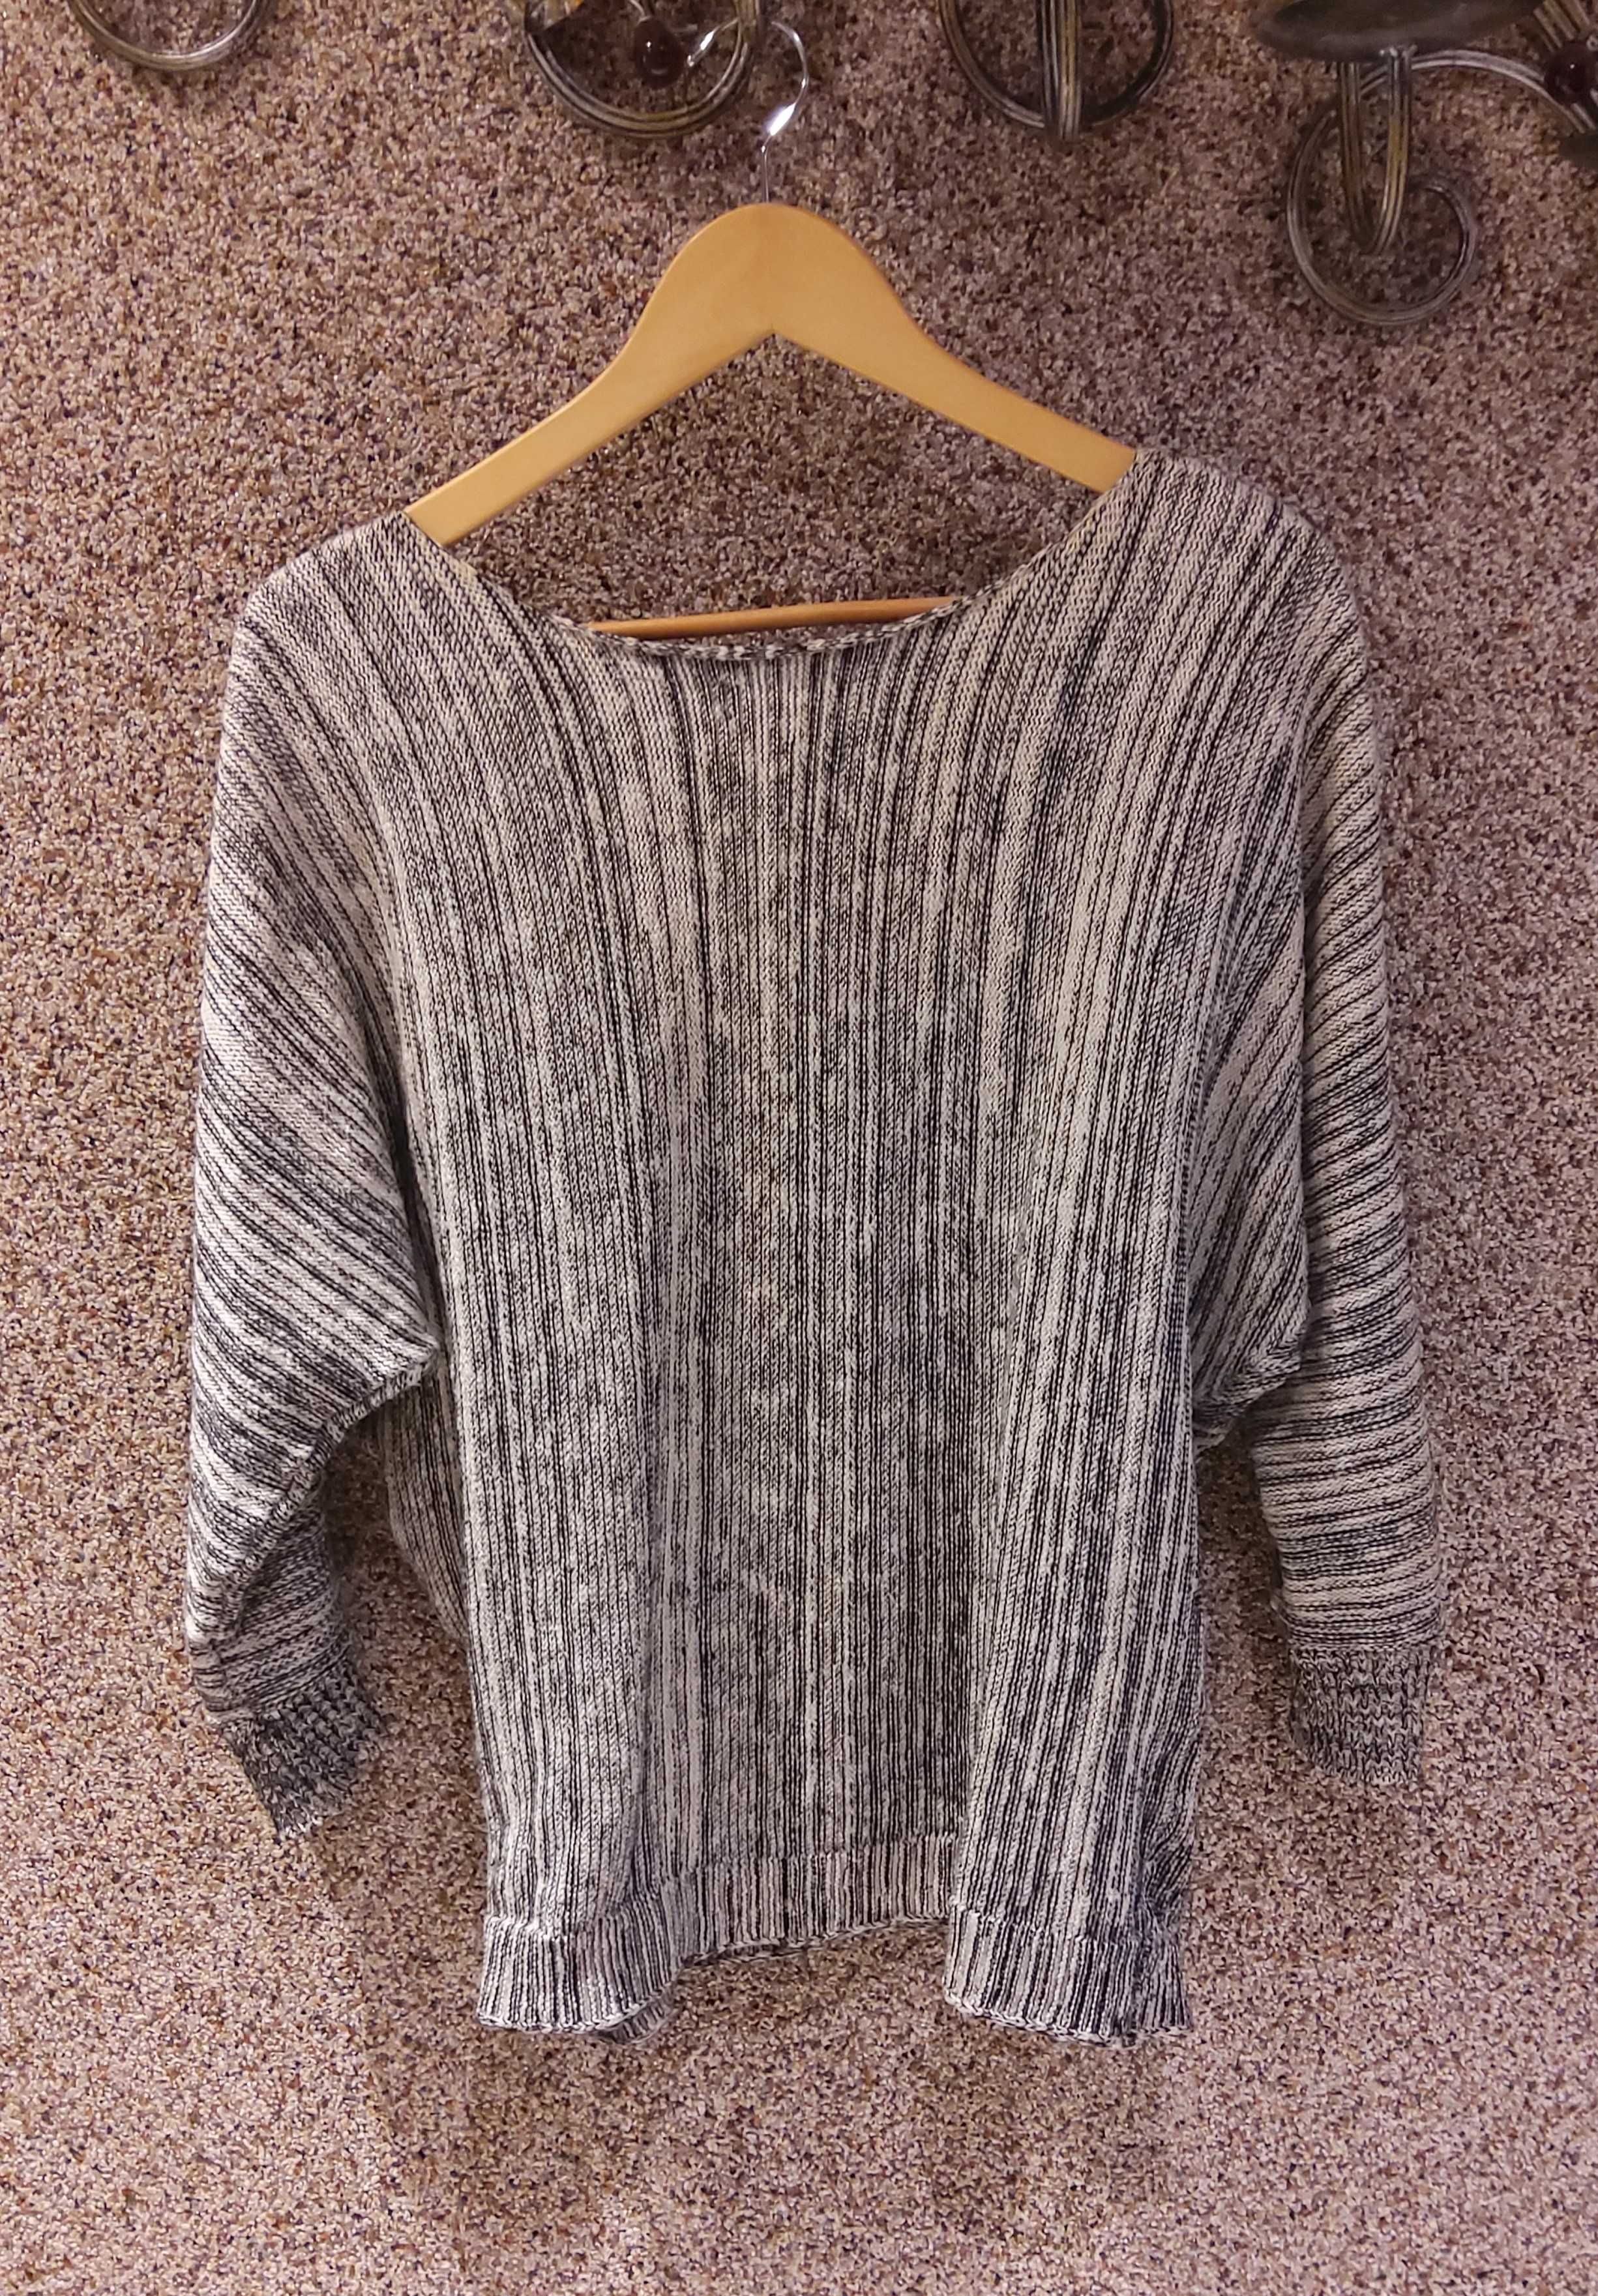 Женская кофточка свитер с вышивкой CHANEL размер XL/2XL